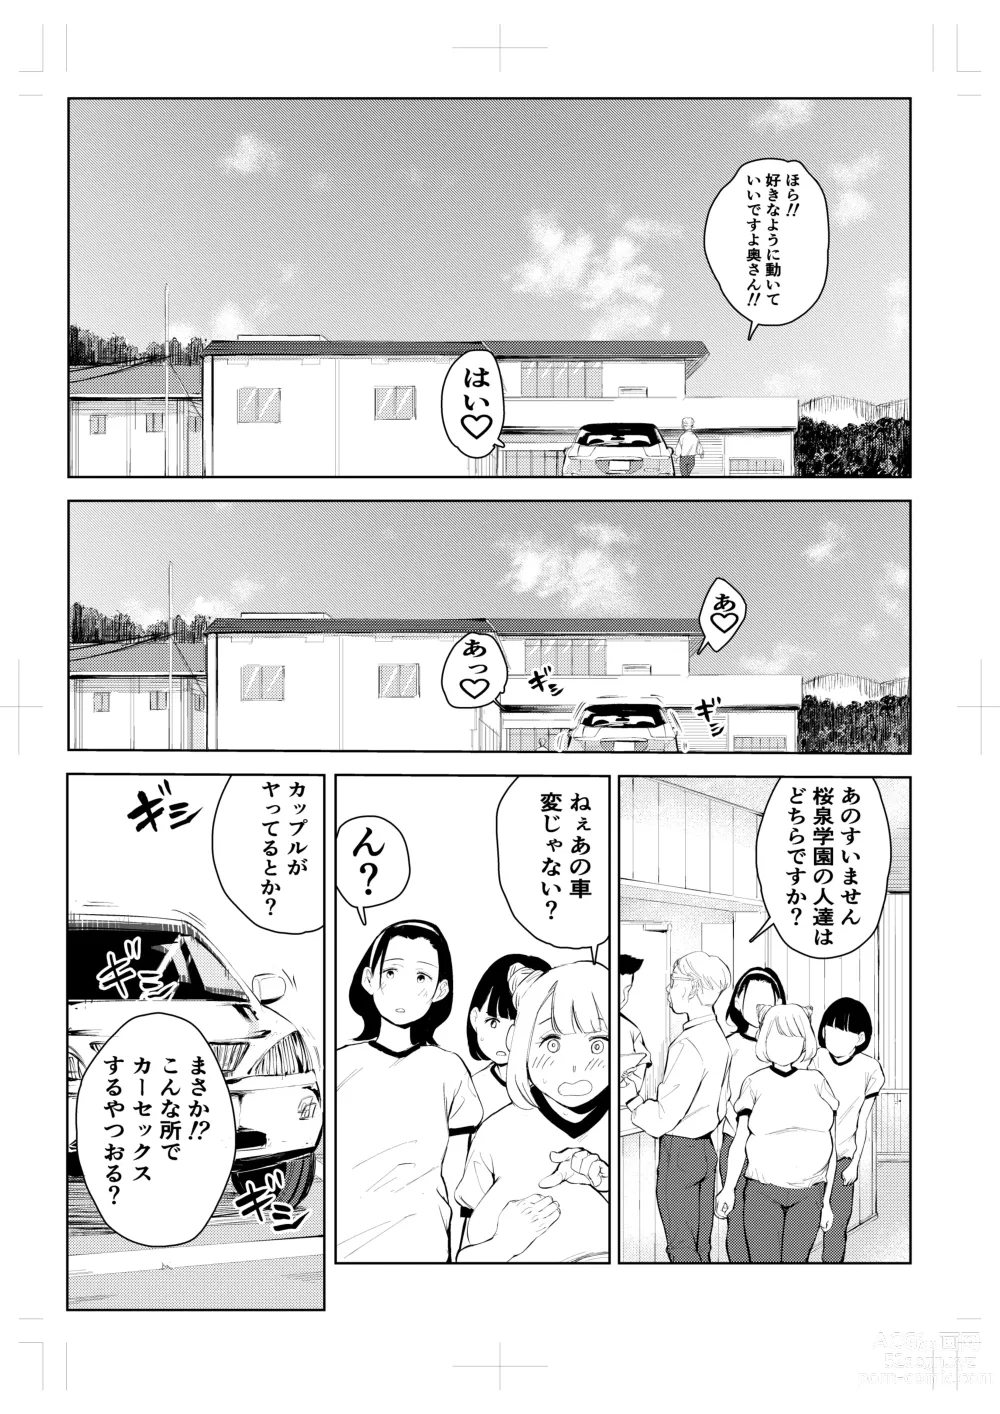 Page 24 of doujinshi 40-sai no Mahoutsukai 4